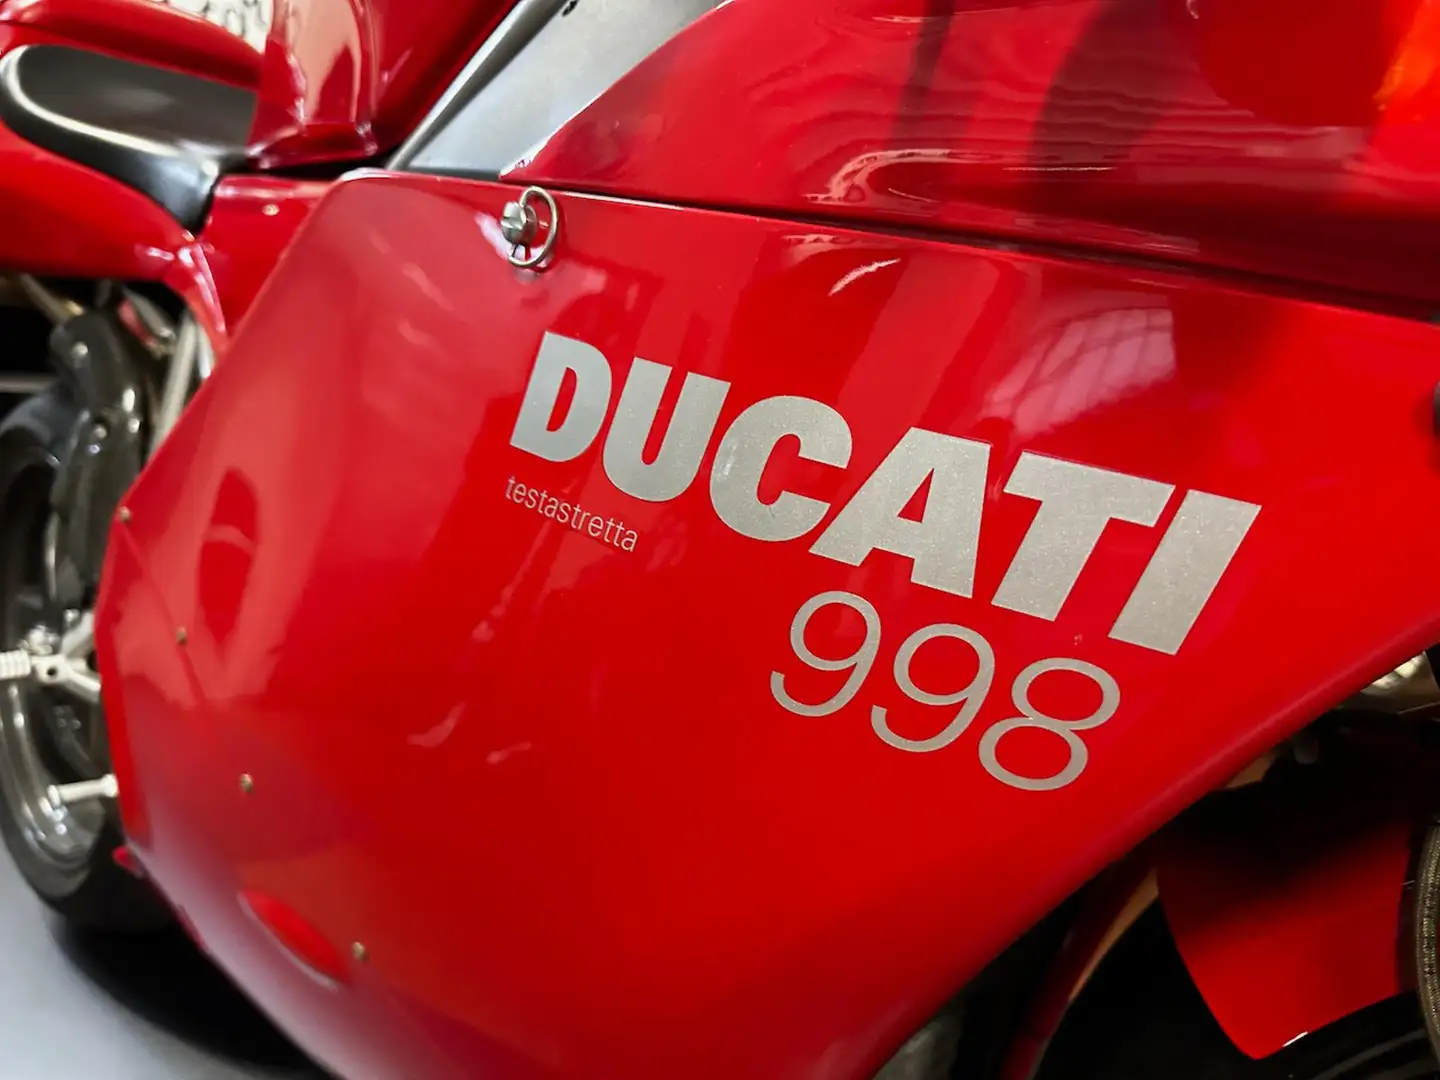 Ducati 998 ORIGINALE Czerwony - 2